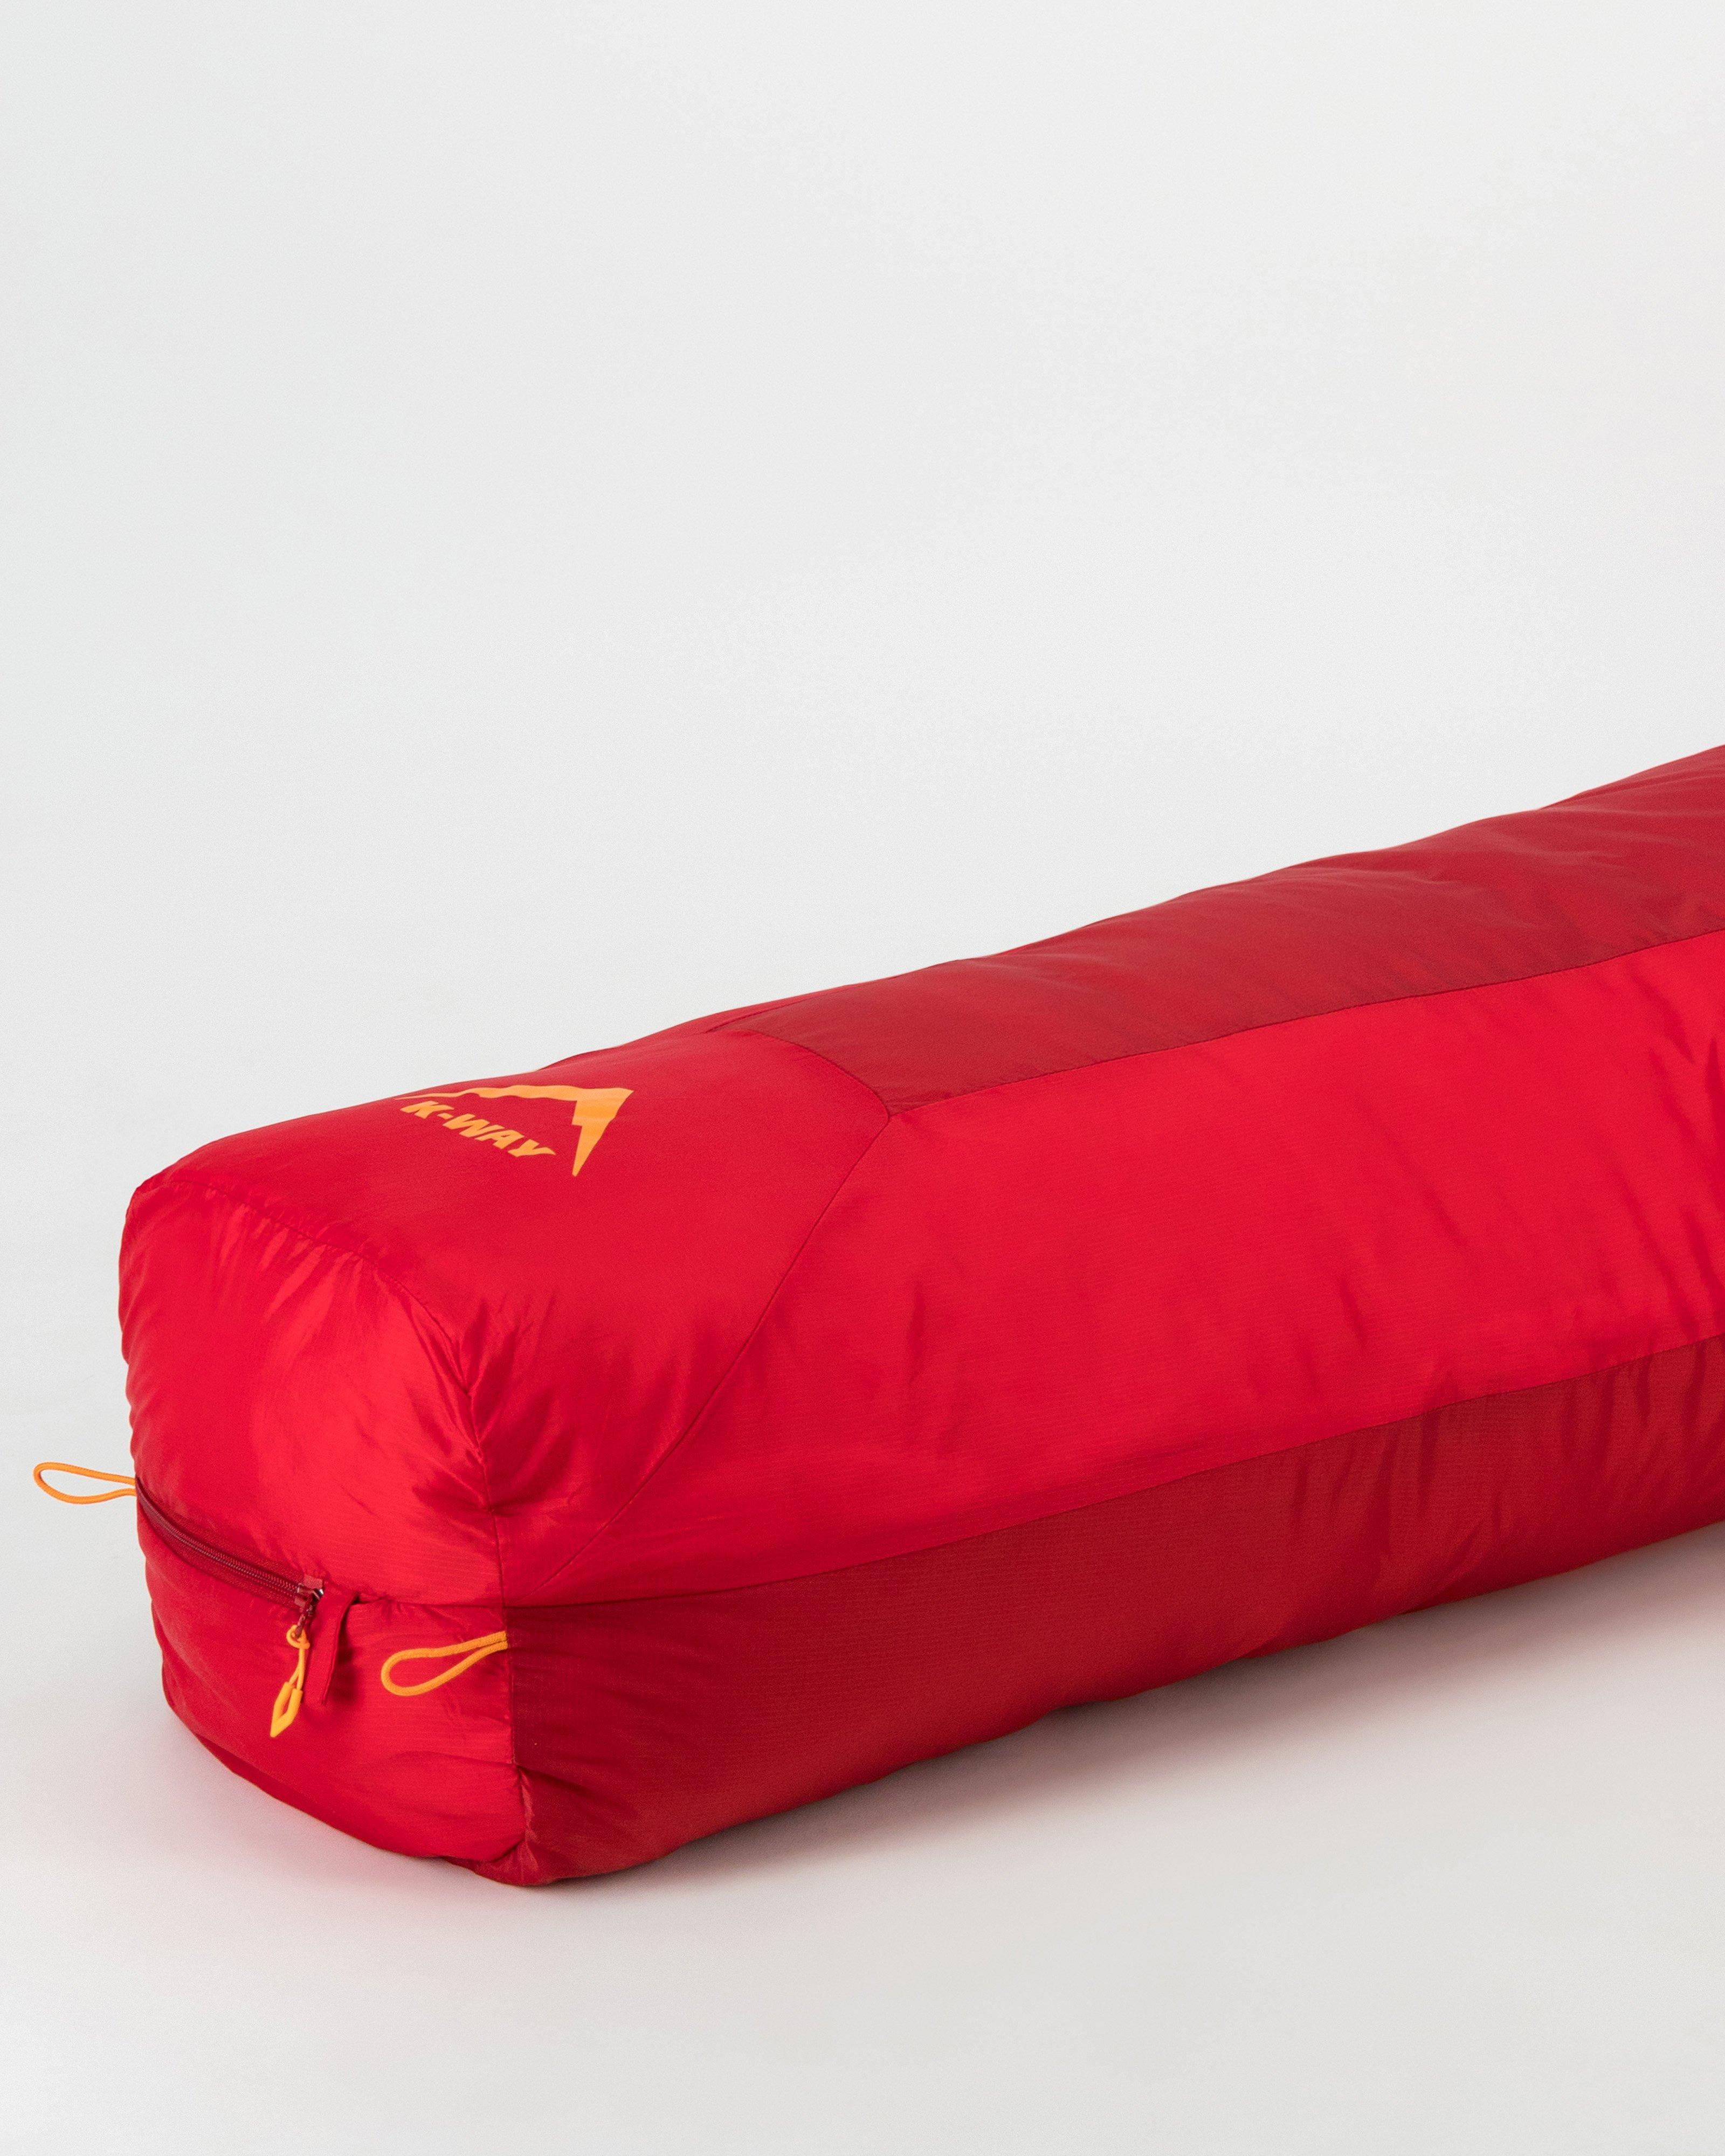 K-Way Magoeba Eco Sleeping Bag -  Red